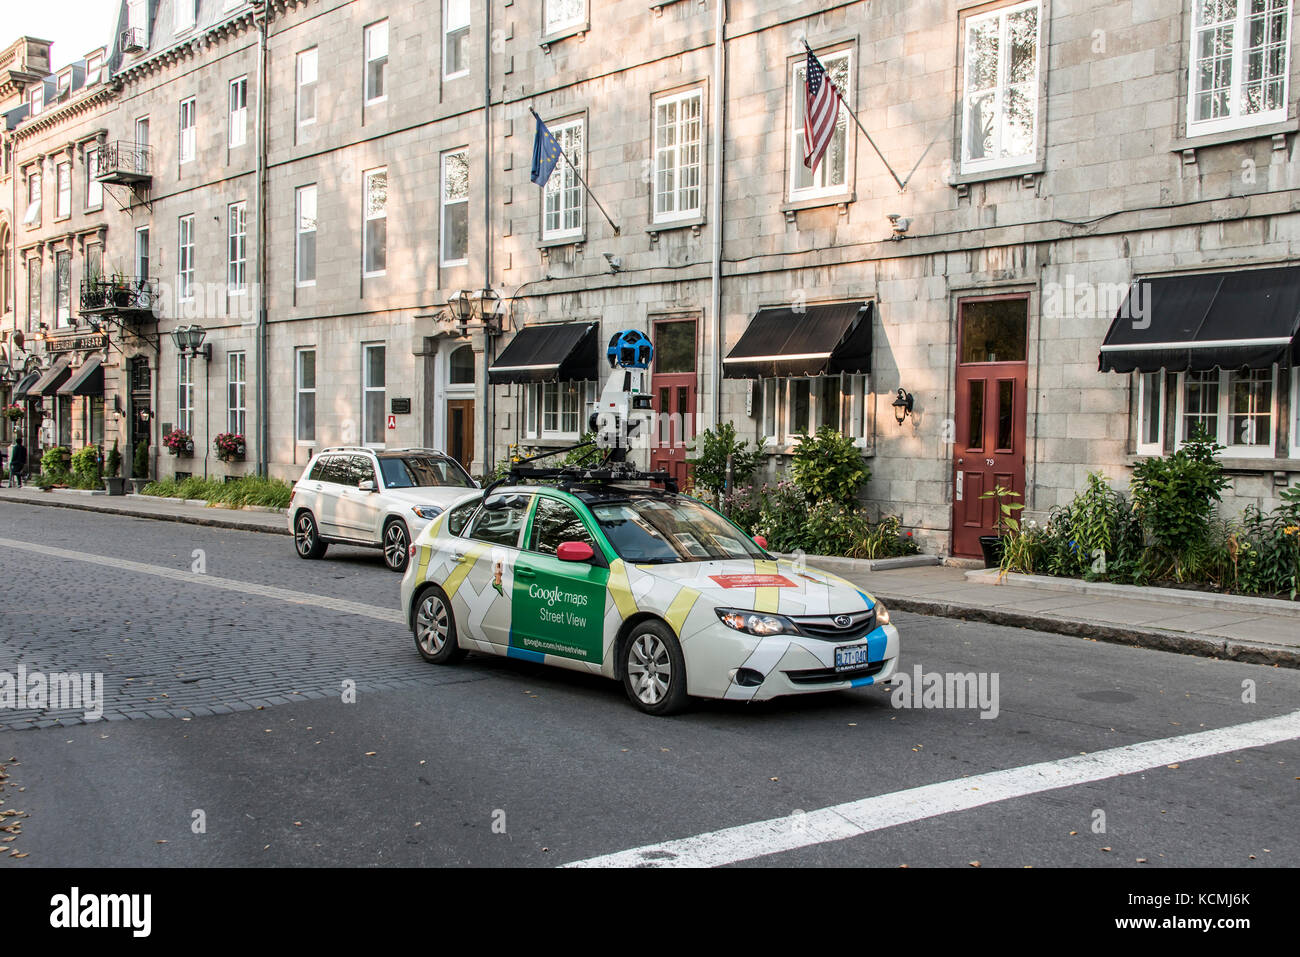 La ciudad de Quebec Canada - 11.09.2017 Google Street View vehículo automóvil apping calles por todo el centro de la ciudad de Quebec Foto de stock